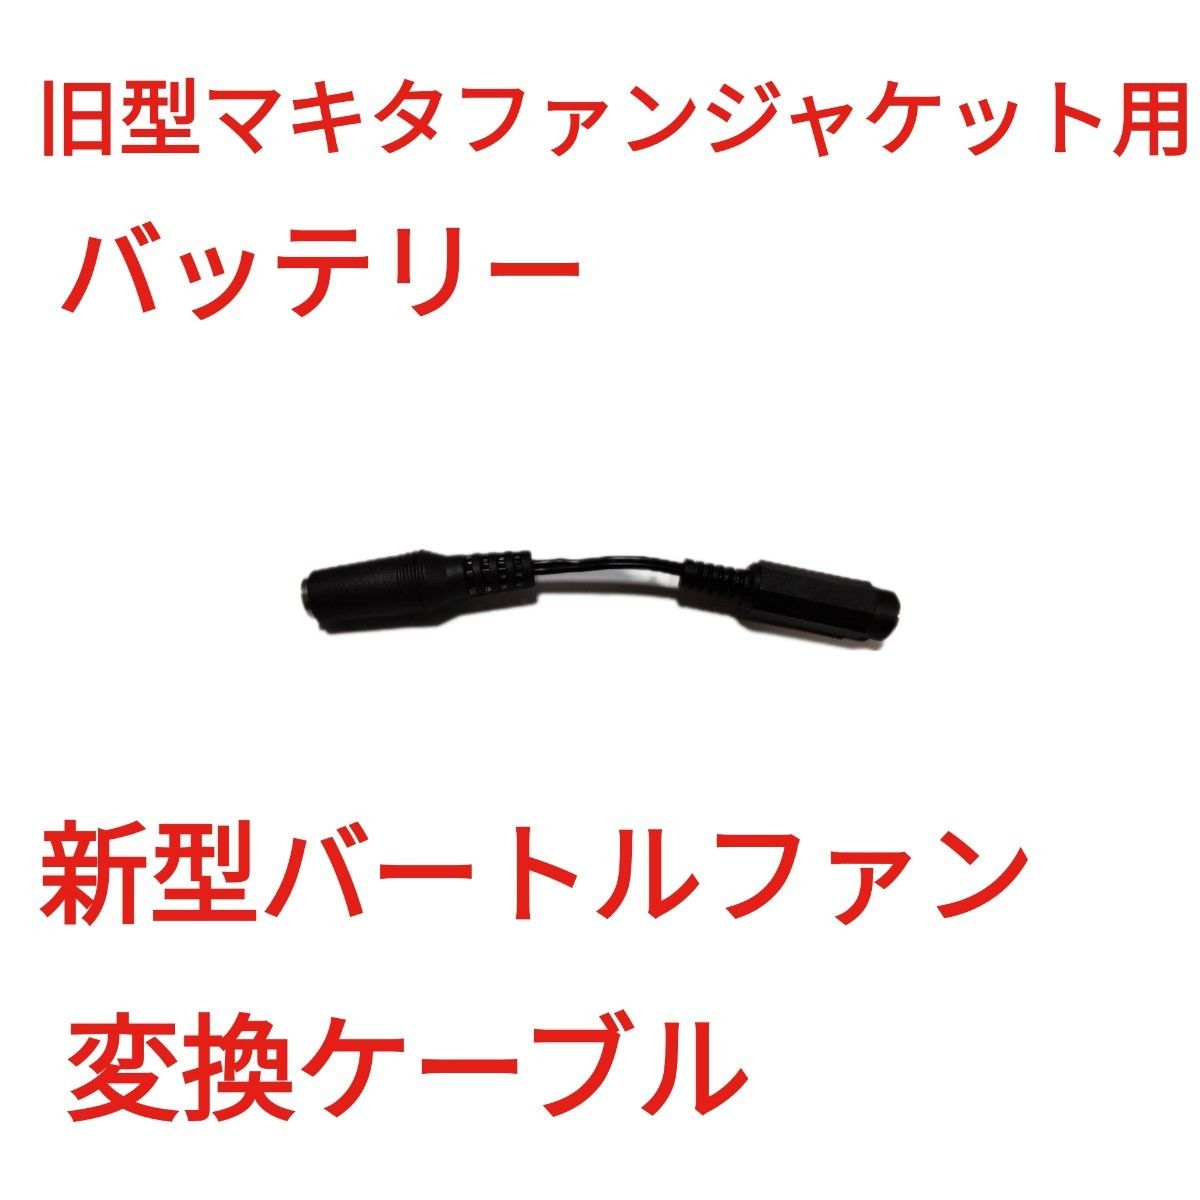 旧型マキタファンジャケット用バッテリー → 新型バートルファン 変換ケーブル